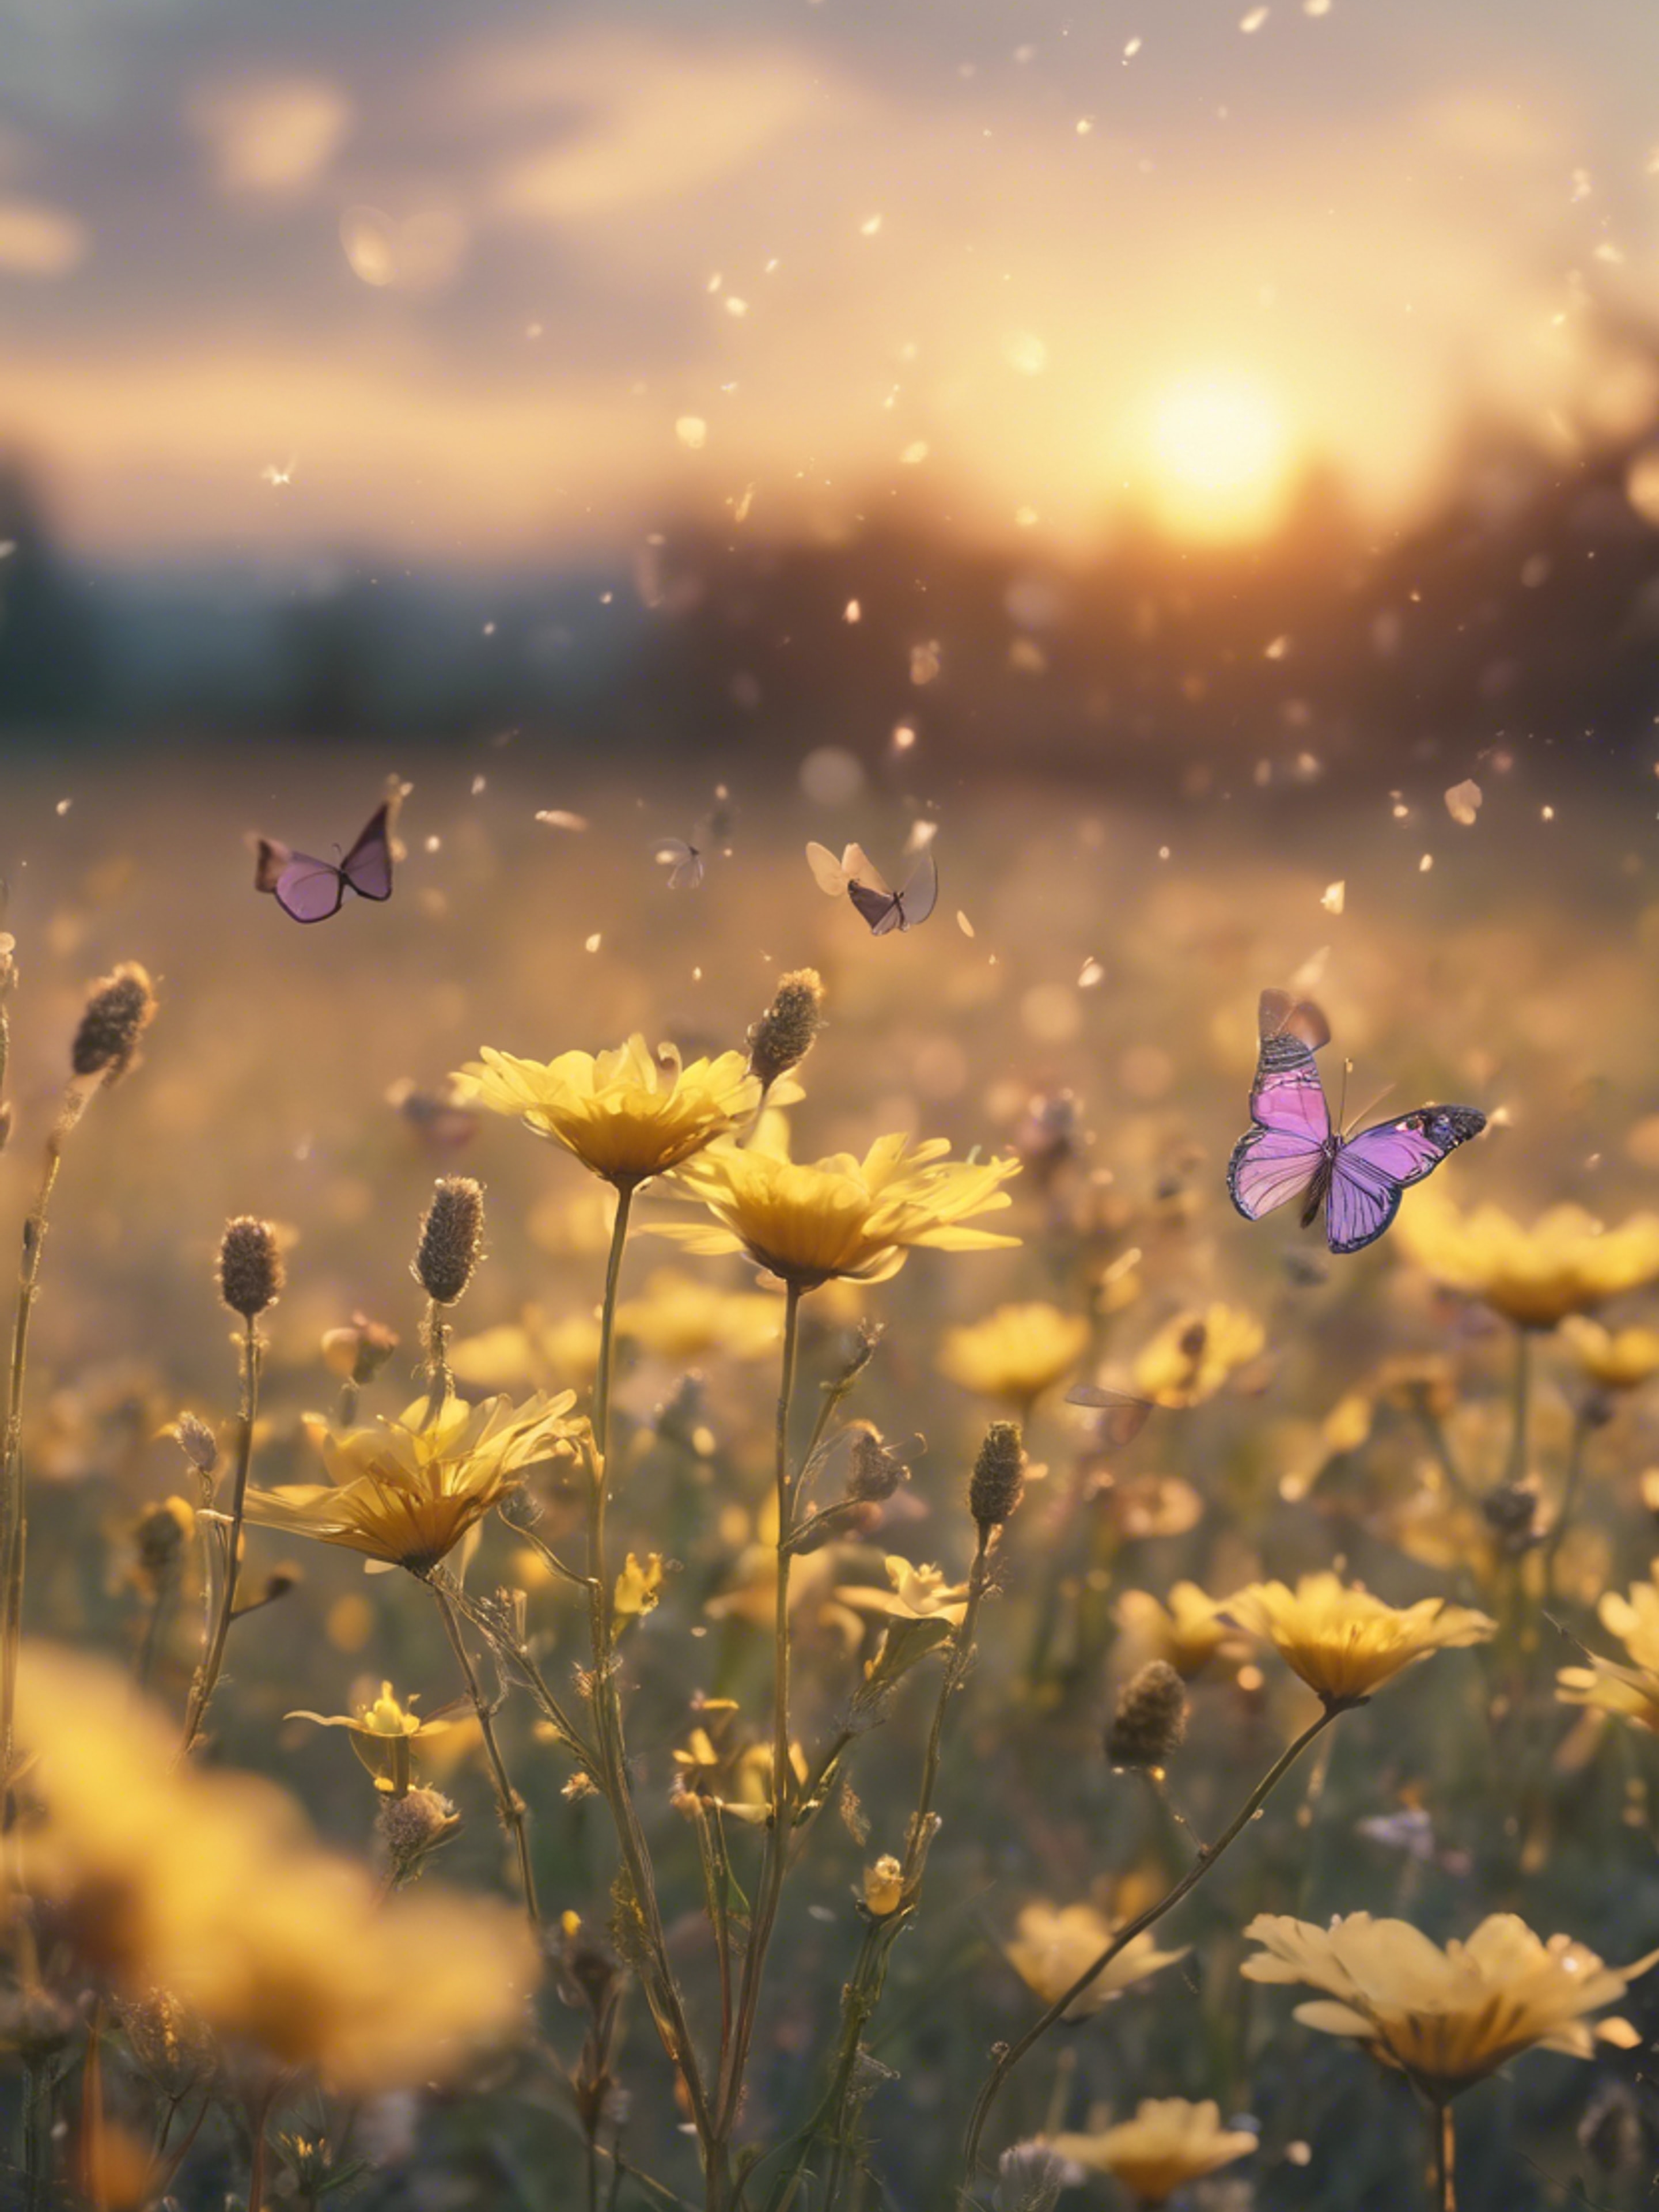 Sunset scene overlooking a meadow filled with pastel yellow flowers and kawaii butterflies fluttering above them. Divar kağızı[4de922e1f50d428d8d1a]